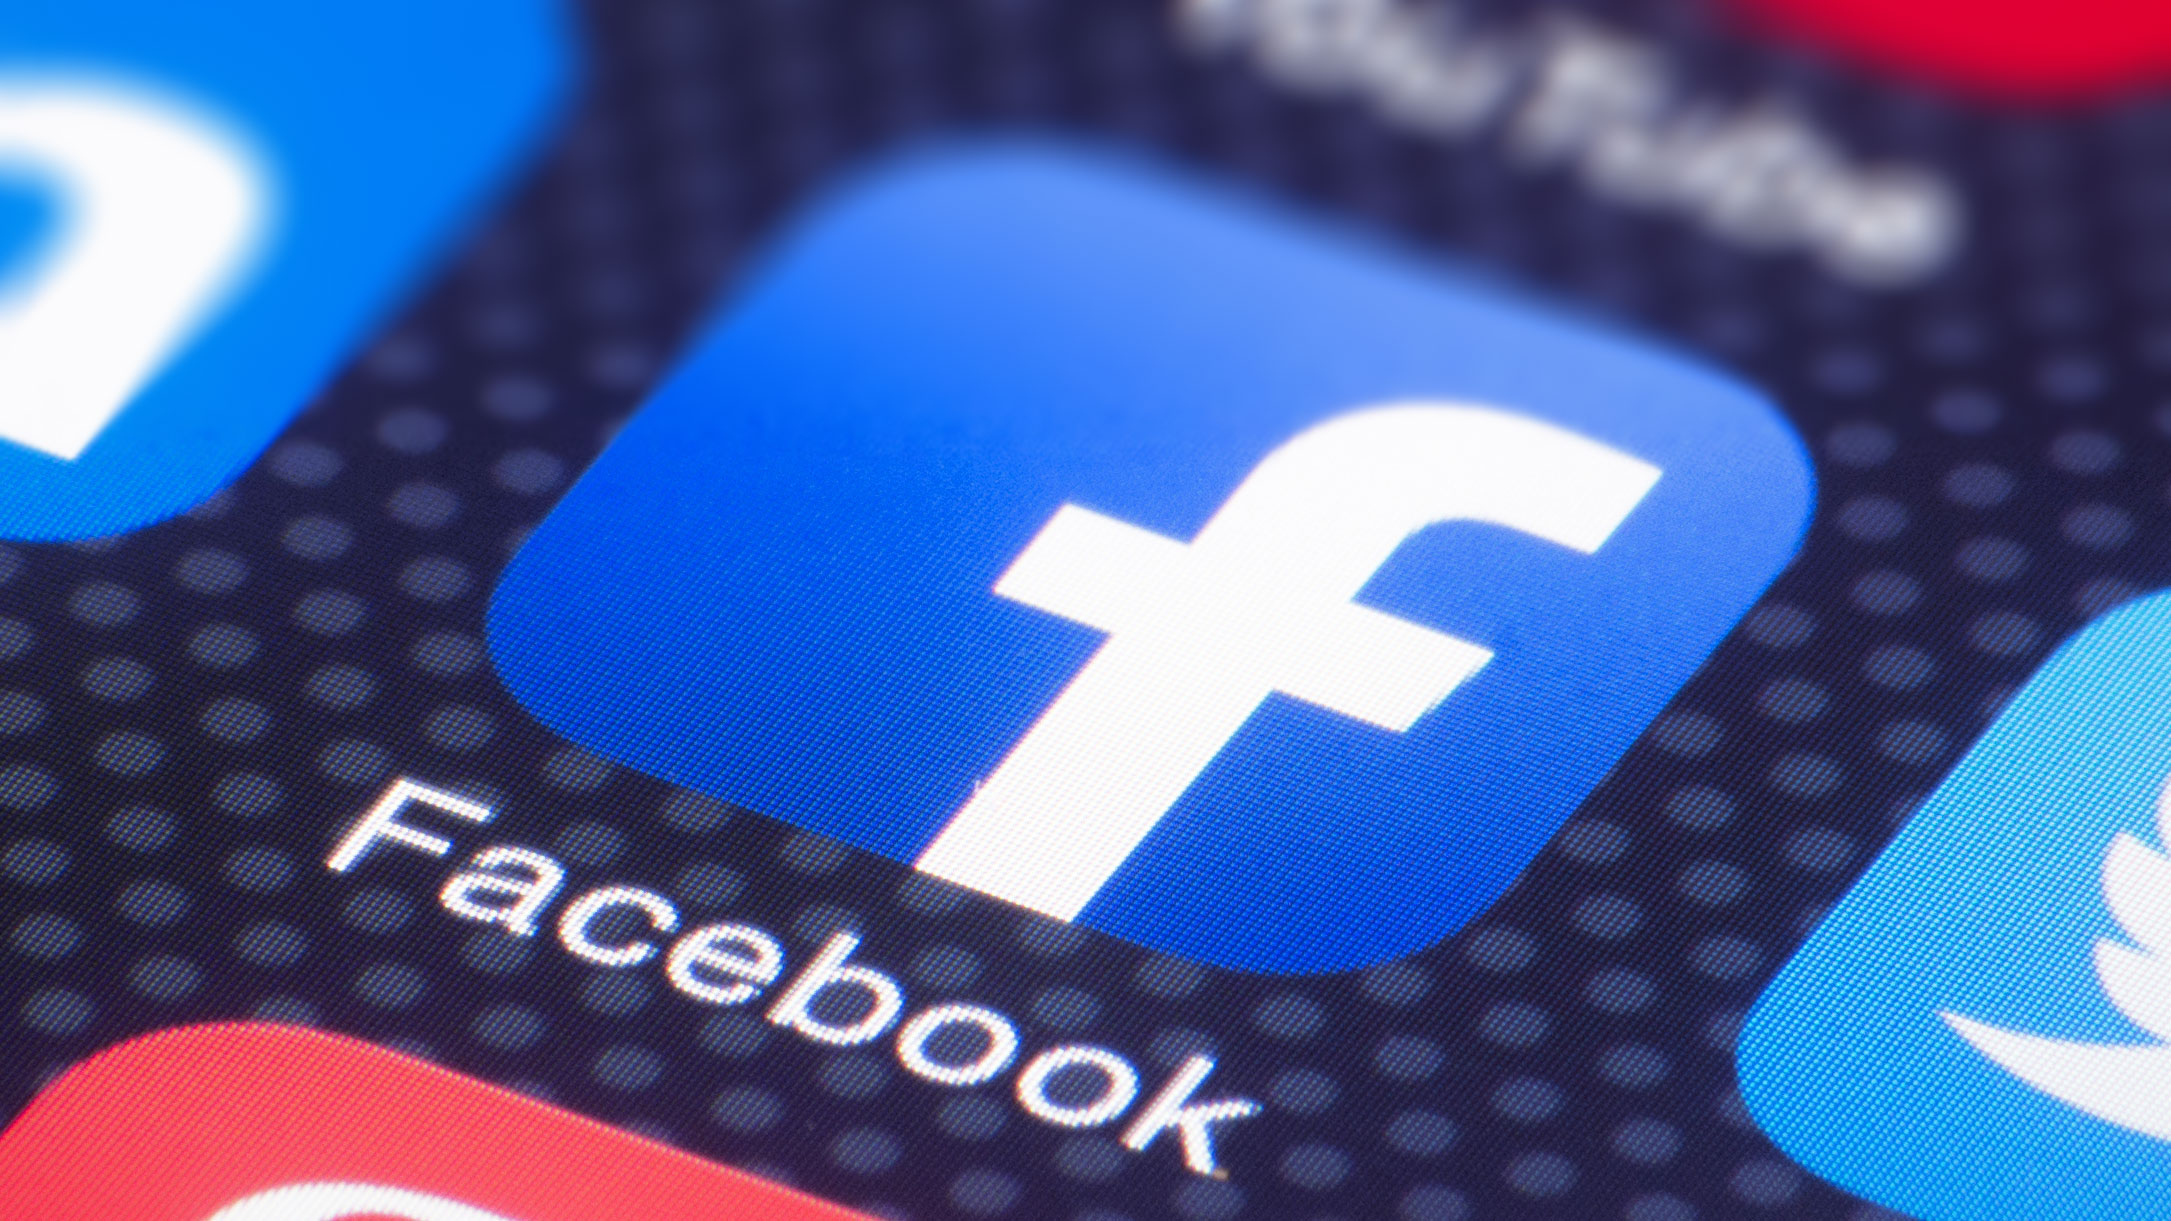 Facebook’ta Dezenformasyon Haberler 6 Kat Daha Fazla Tıklanıyor